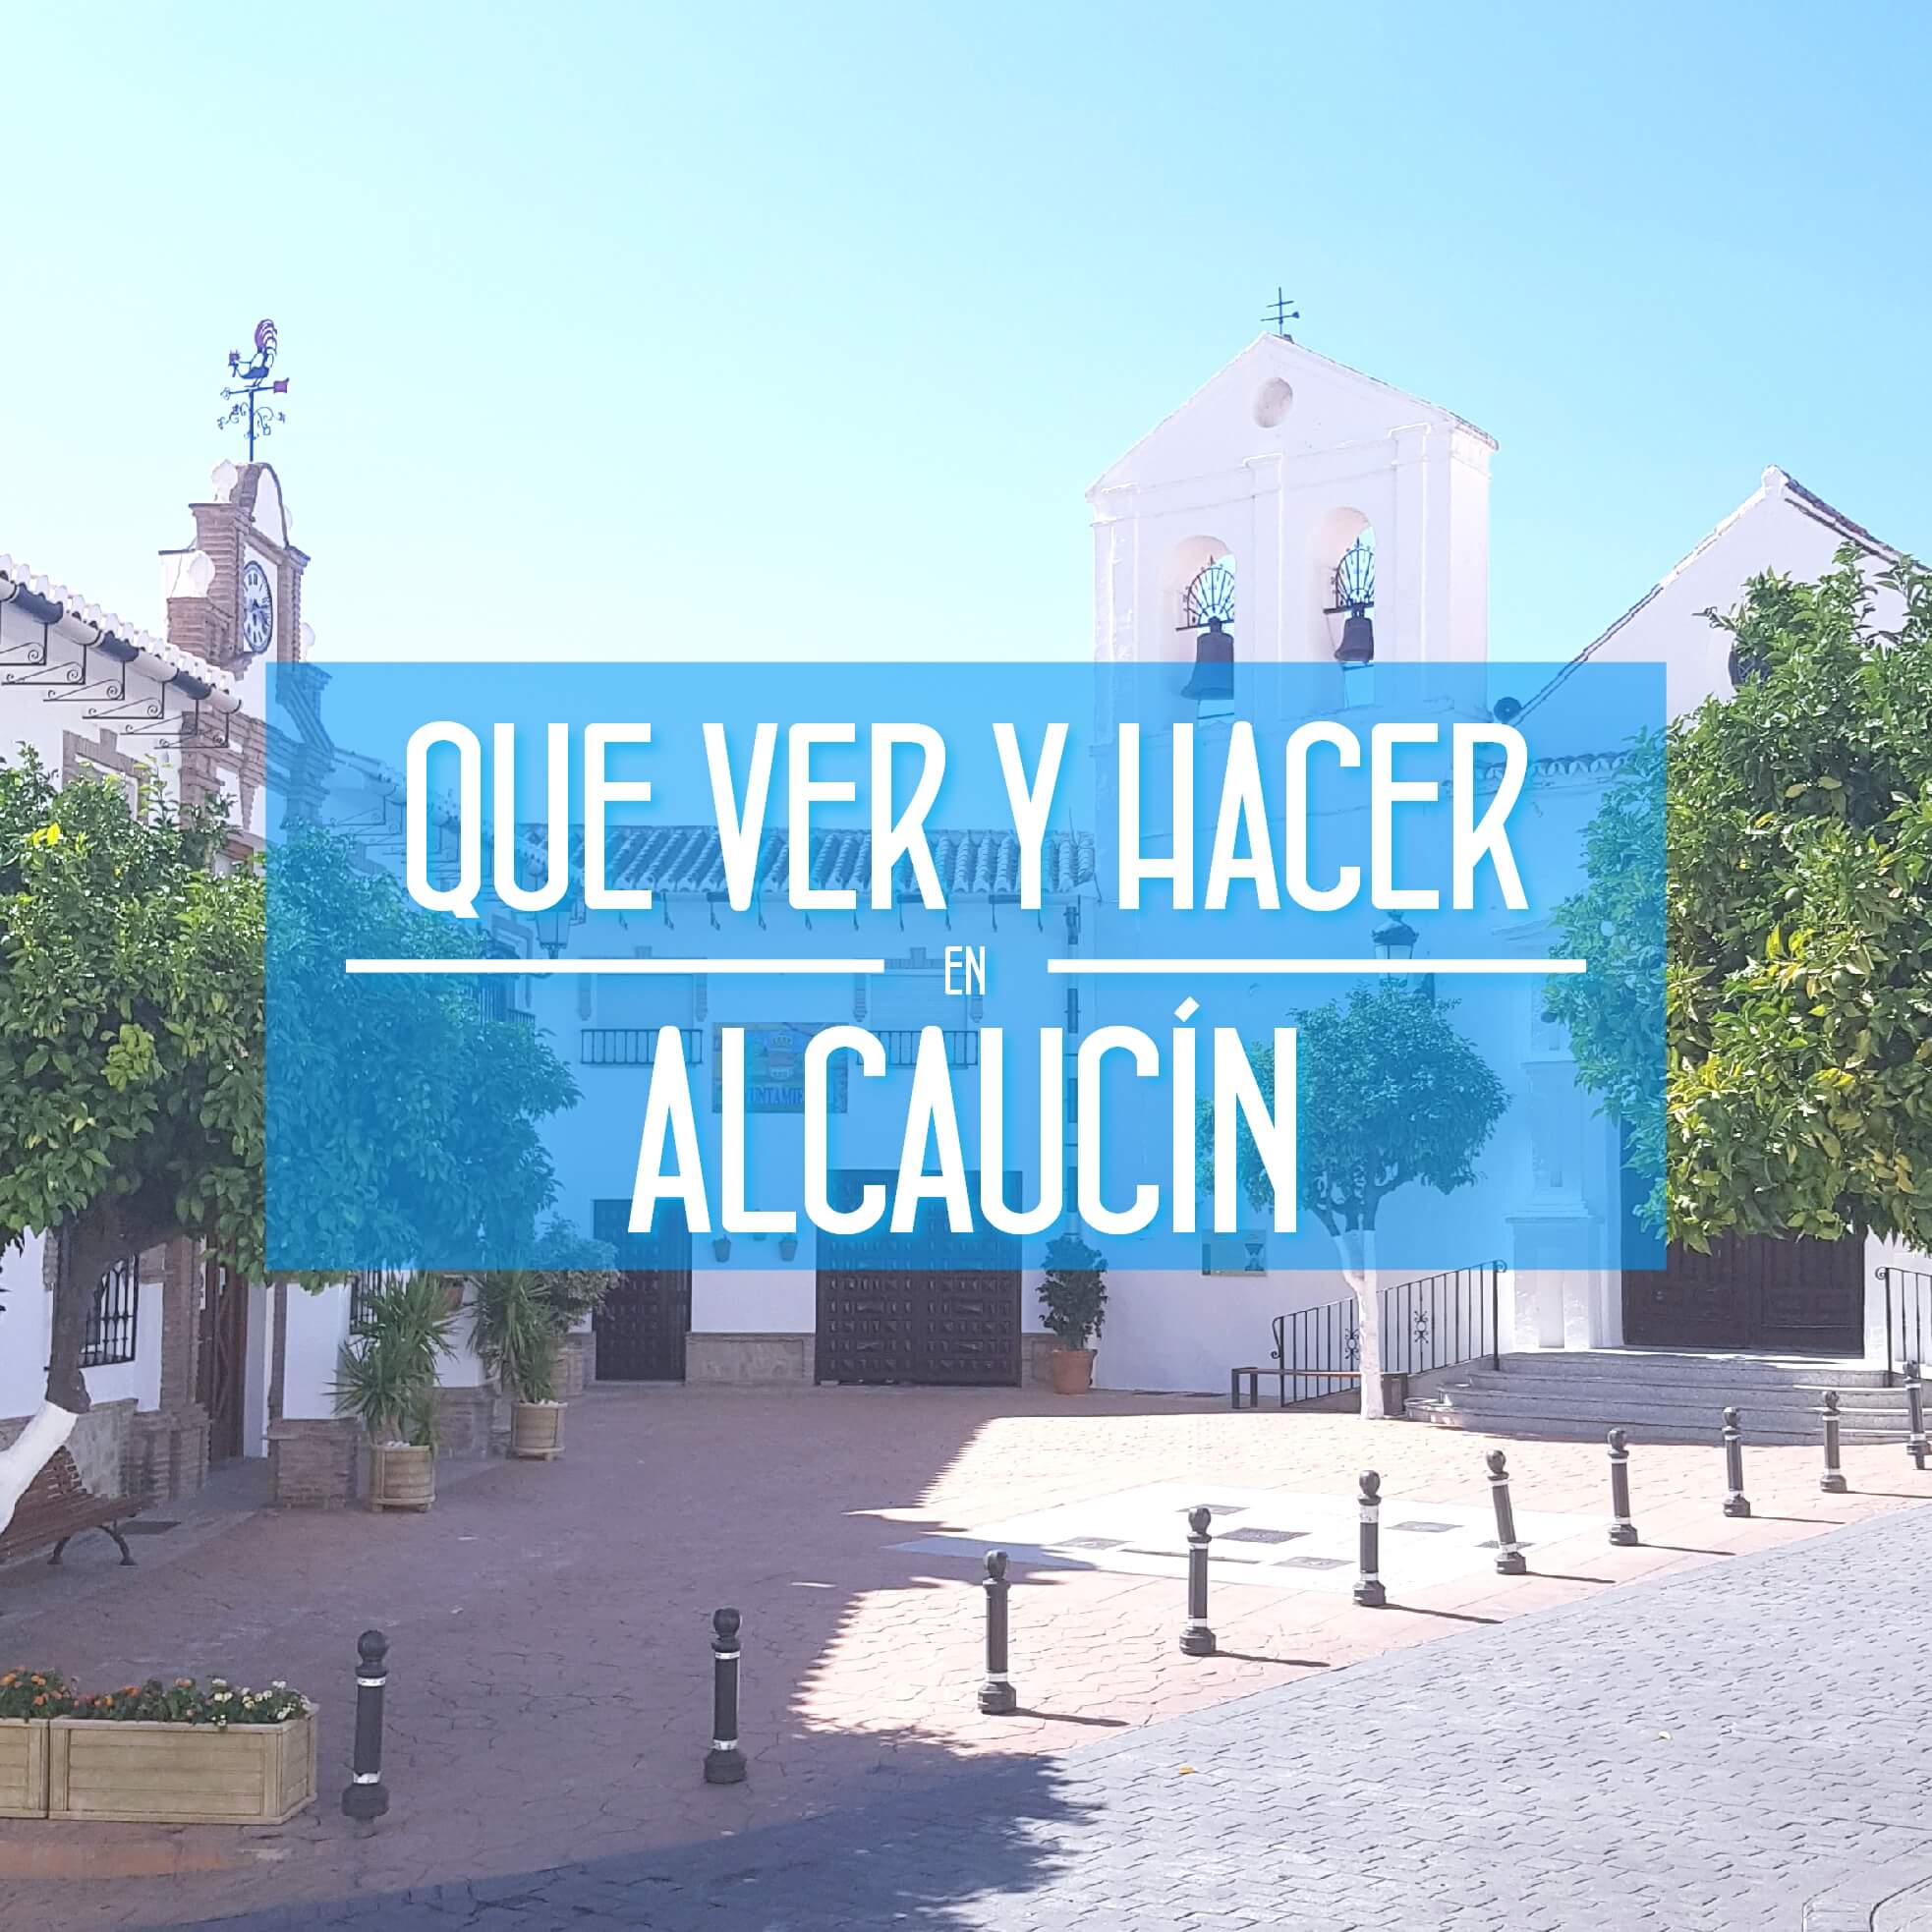 Que ver y hacer en Alcaucín Malaga